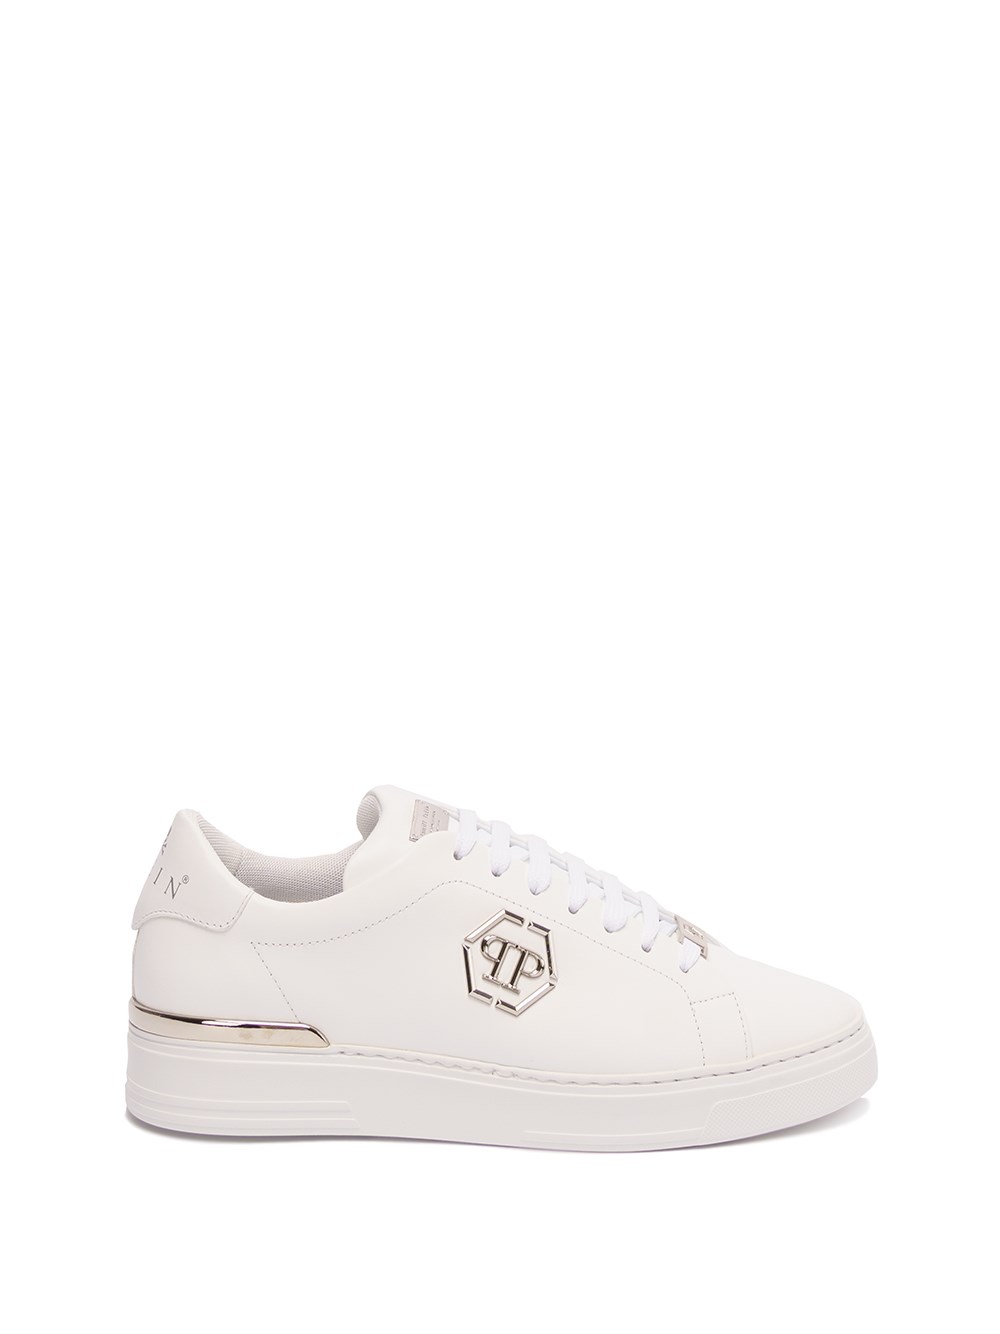 Philipp Plein Hexagon Low-top Leather Sneakers - White